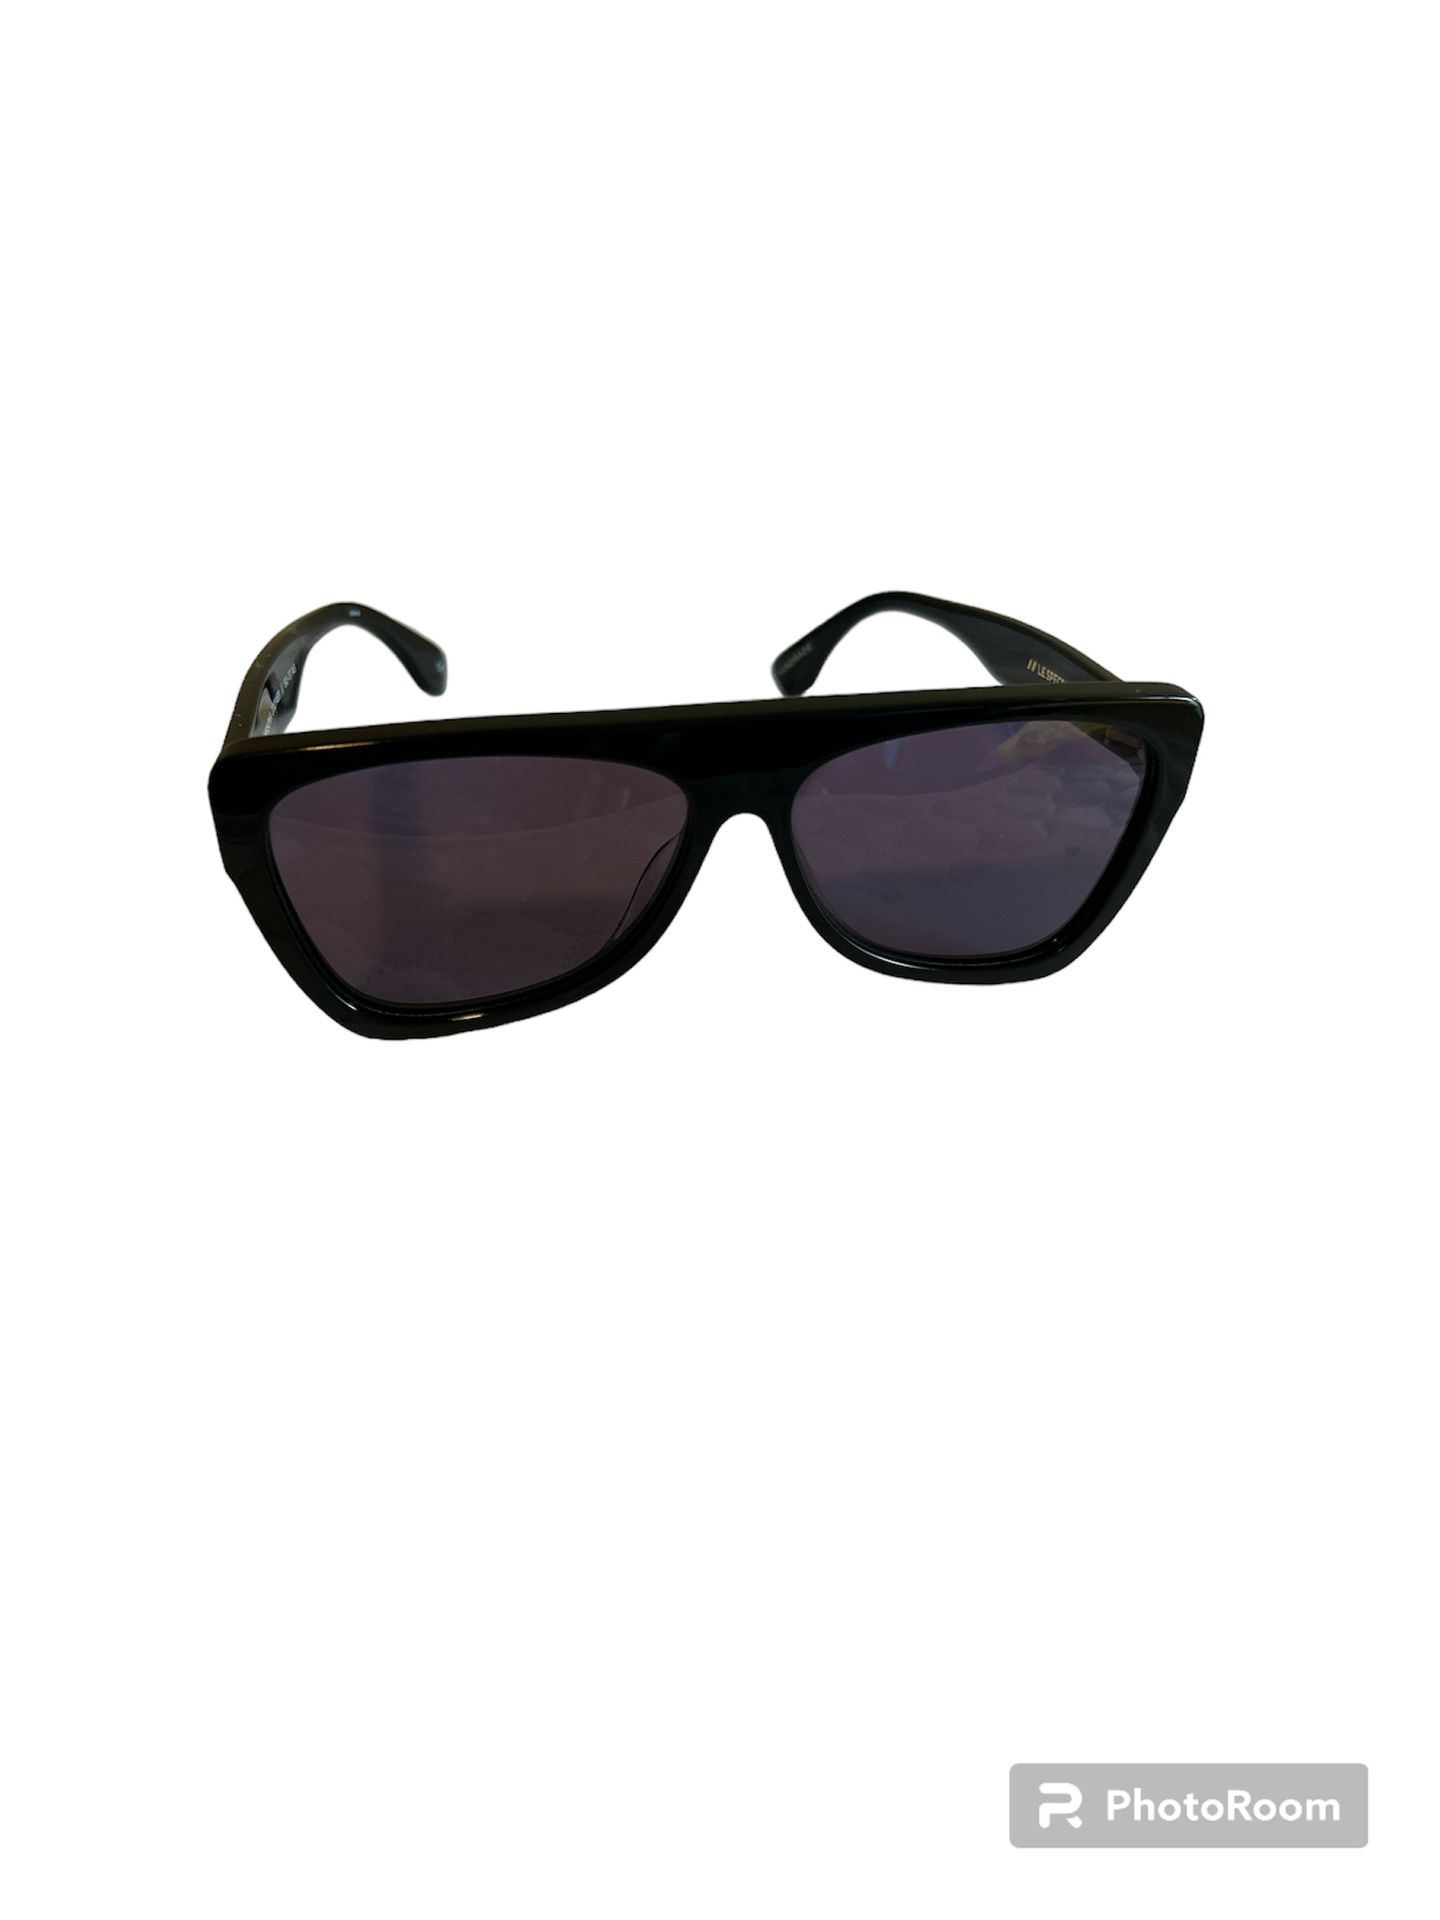 Sunglasses - Le Specs Persona